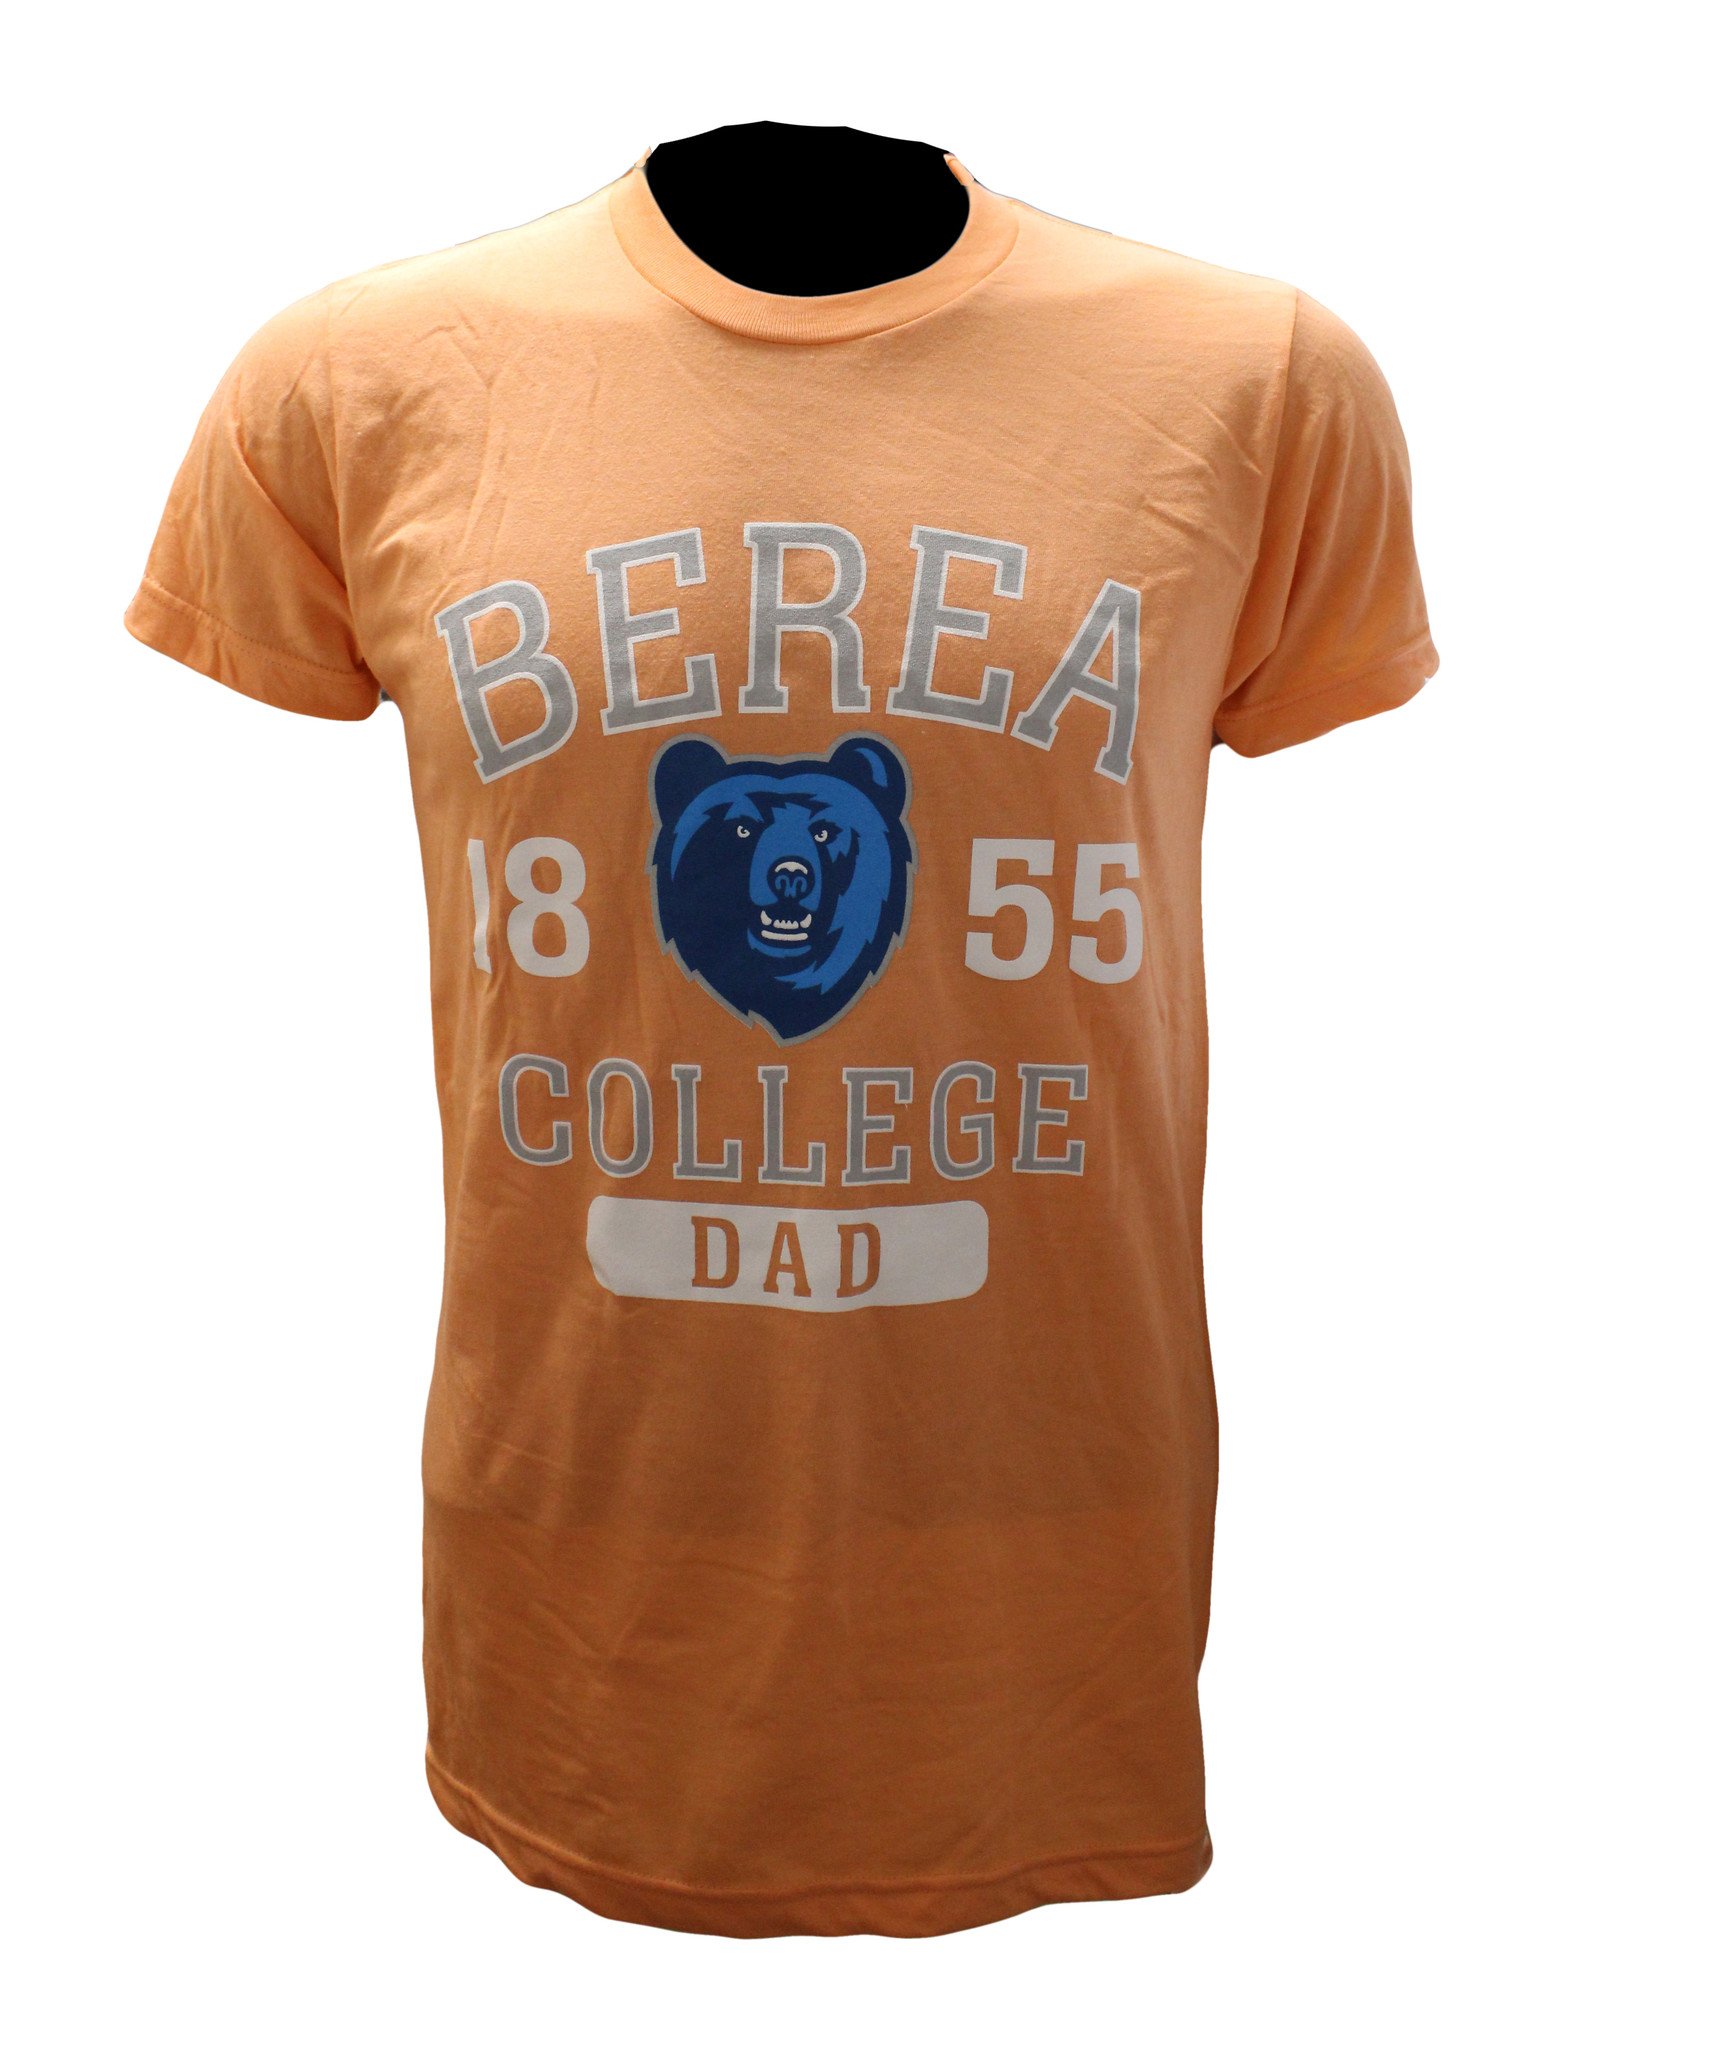 Berea Dad Shirt-1